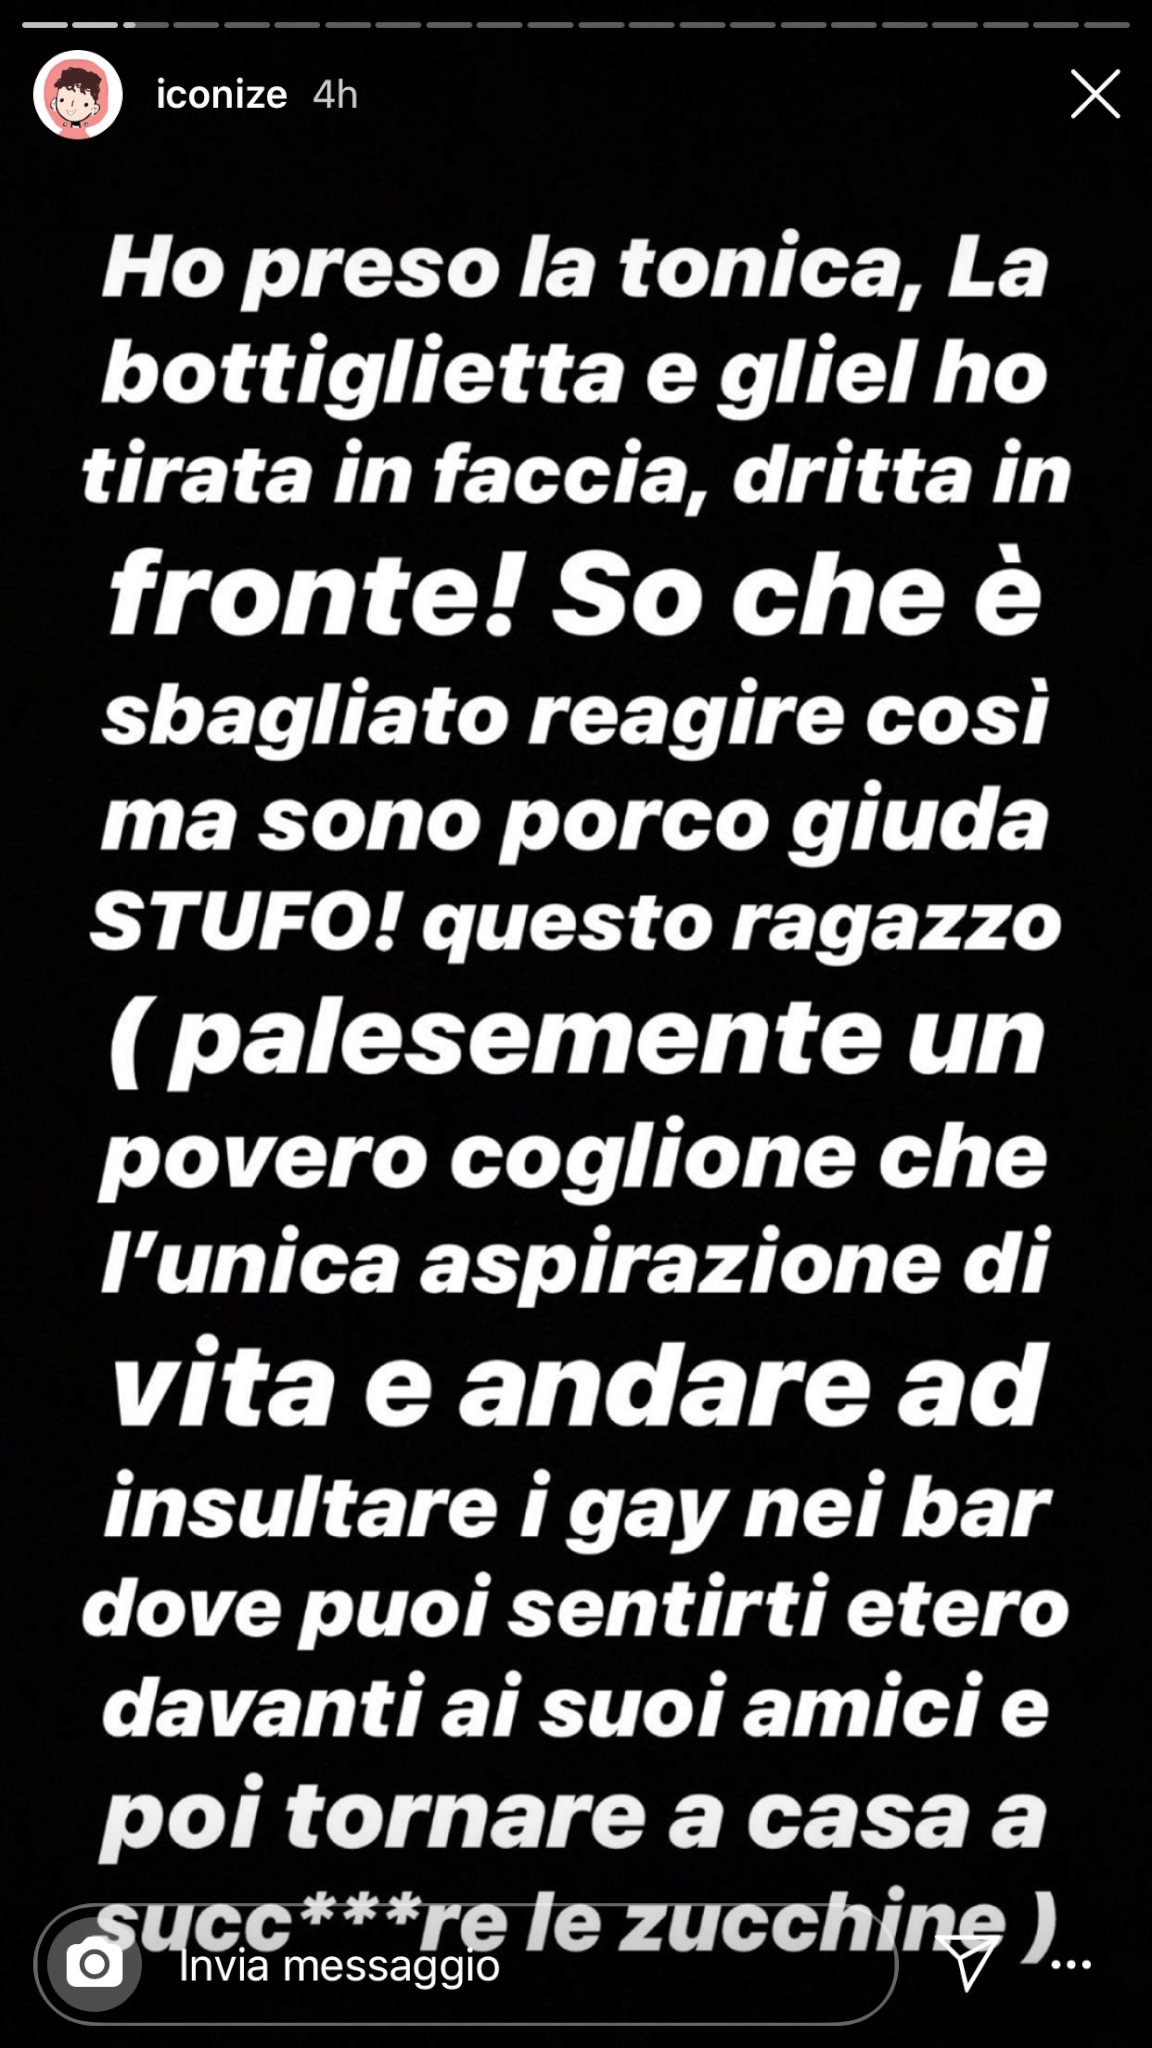 Iconize denuncia un'altra notte di omofobia a Milano: insulti e amica trans presa a sediate - IMG 0553 2 - Gay.it